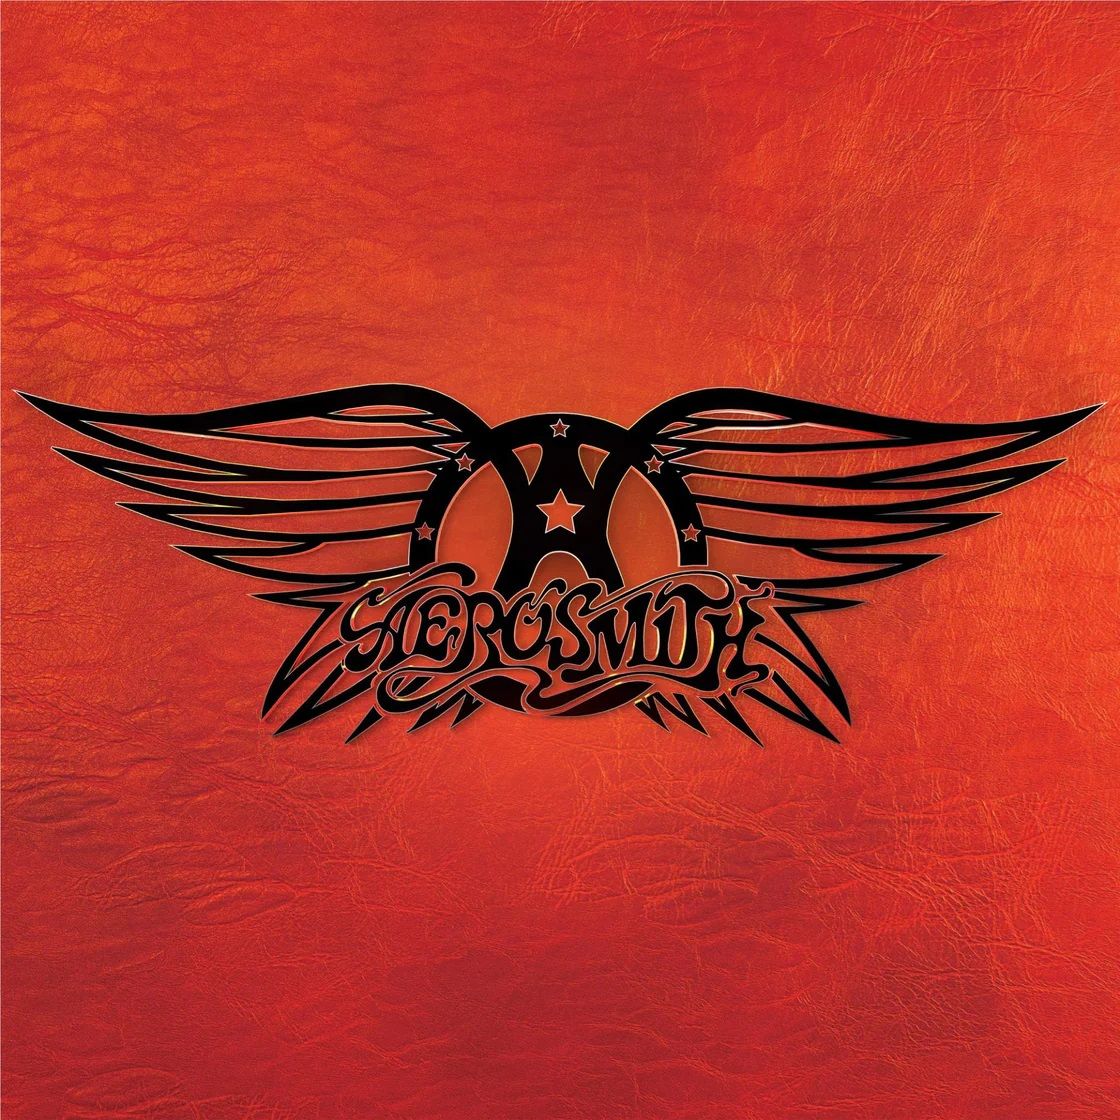 Aerosmith - Greatest Hits - CD - New